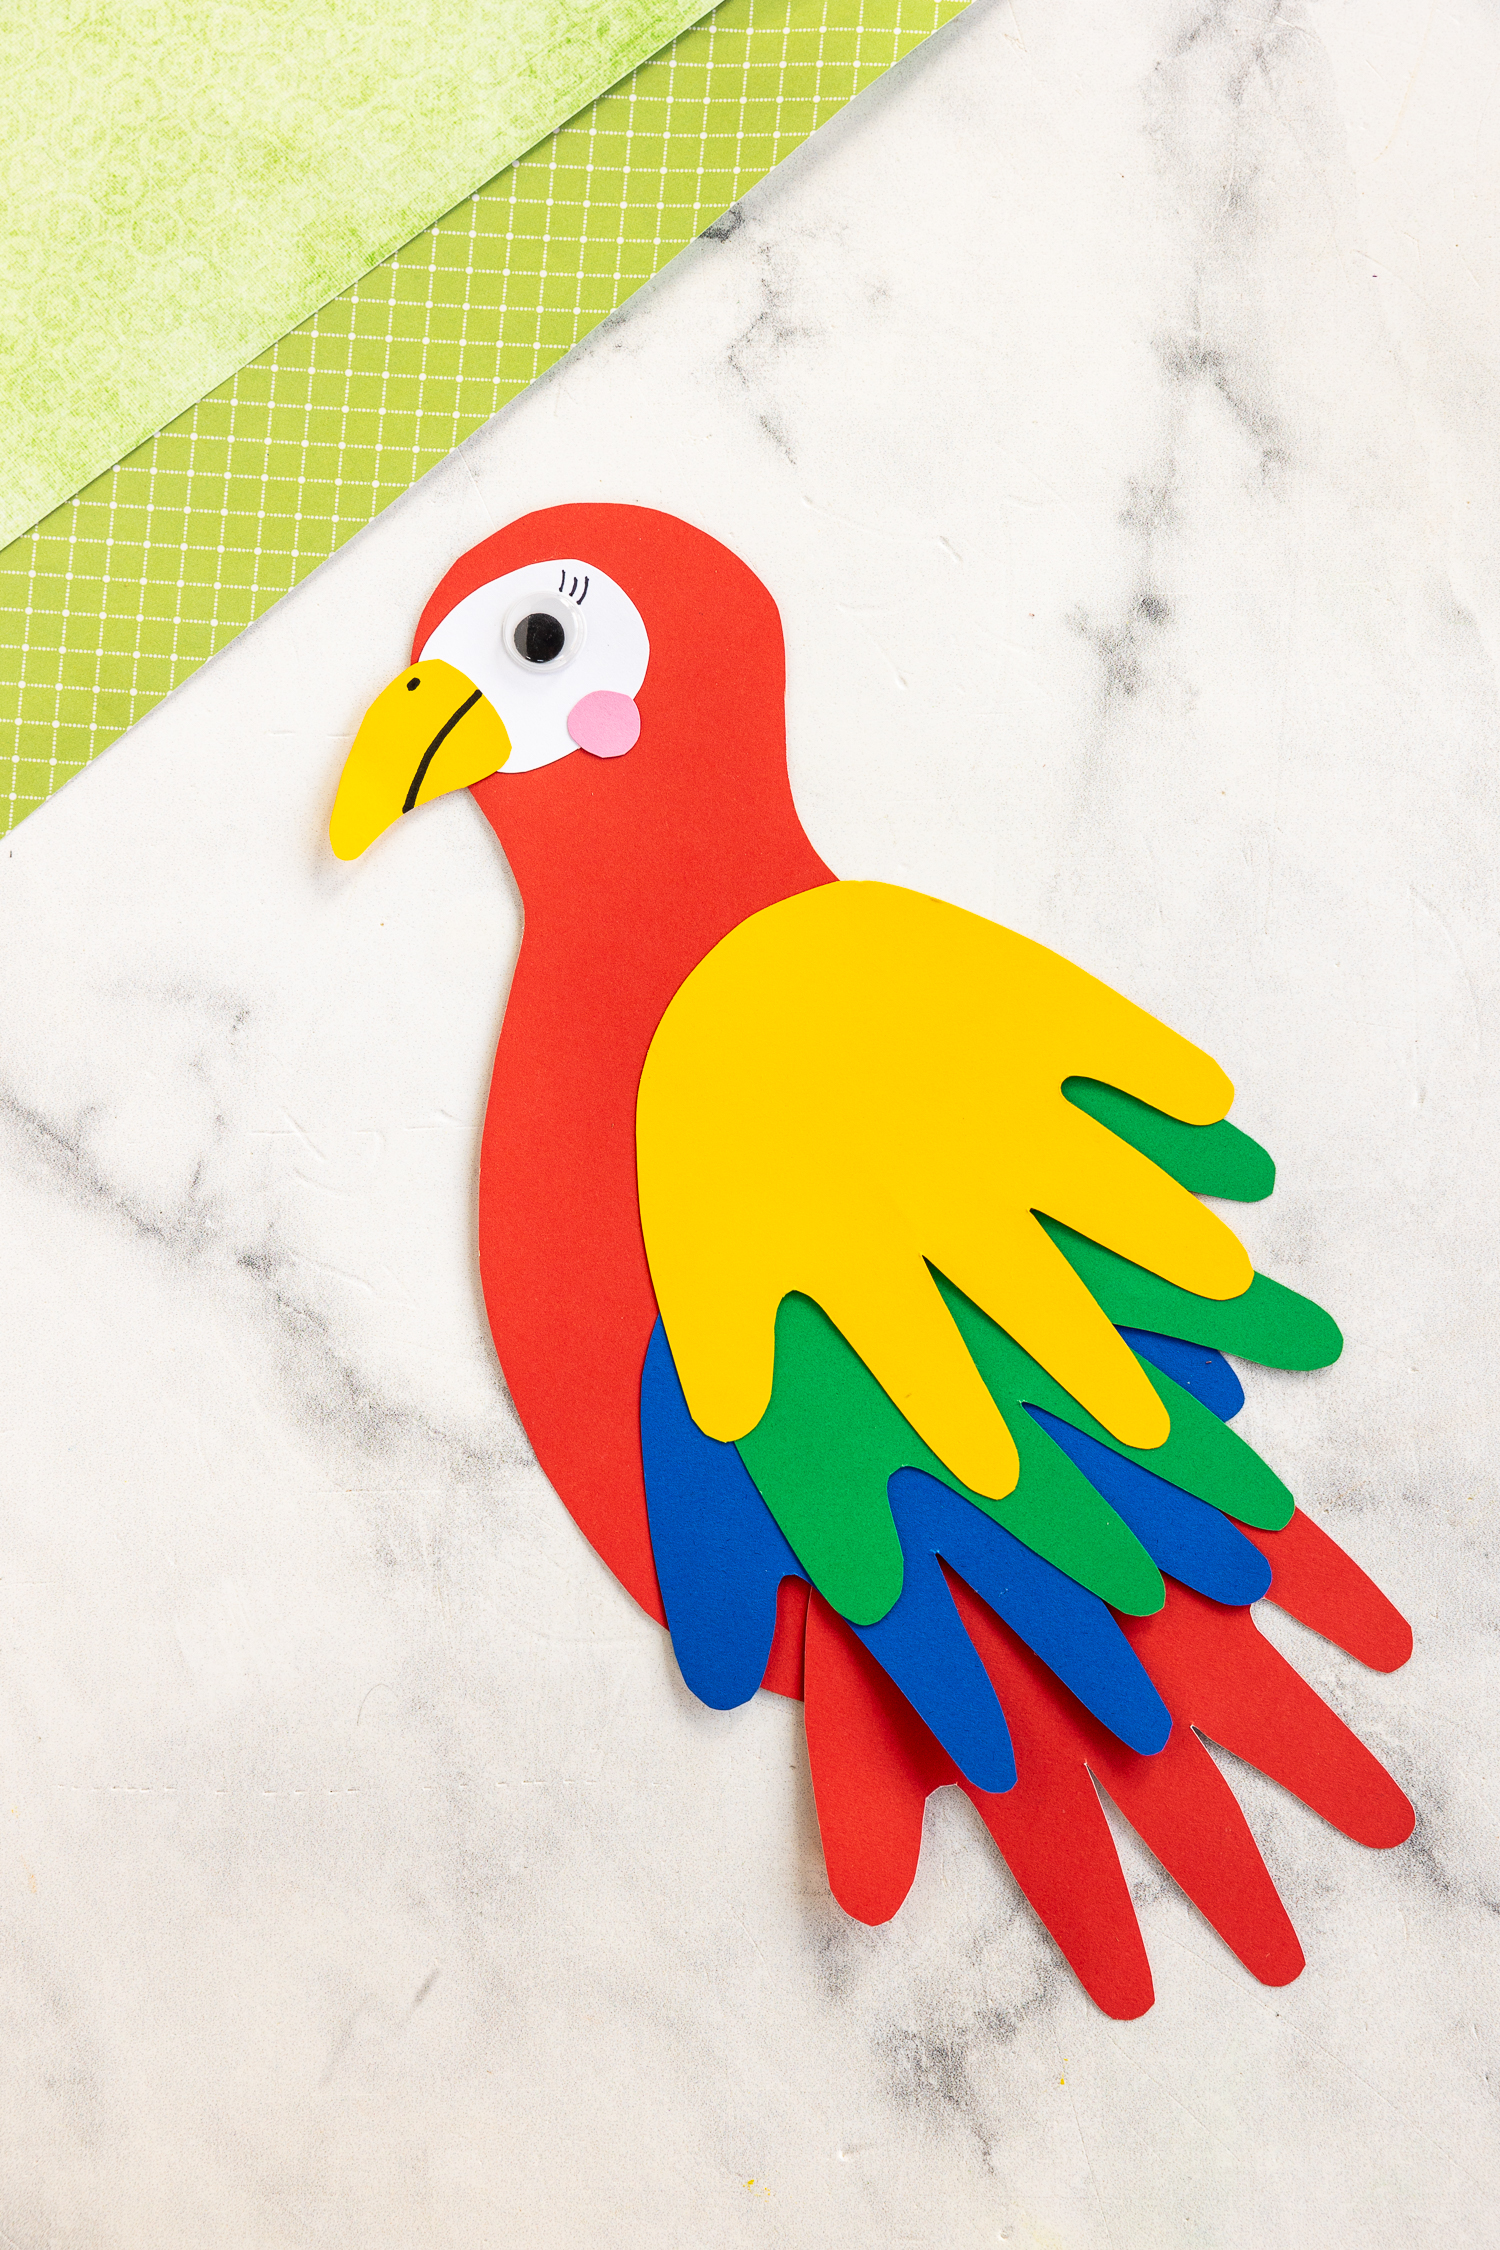 Handprint Parrot Craft